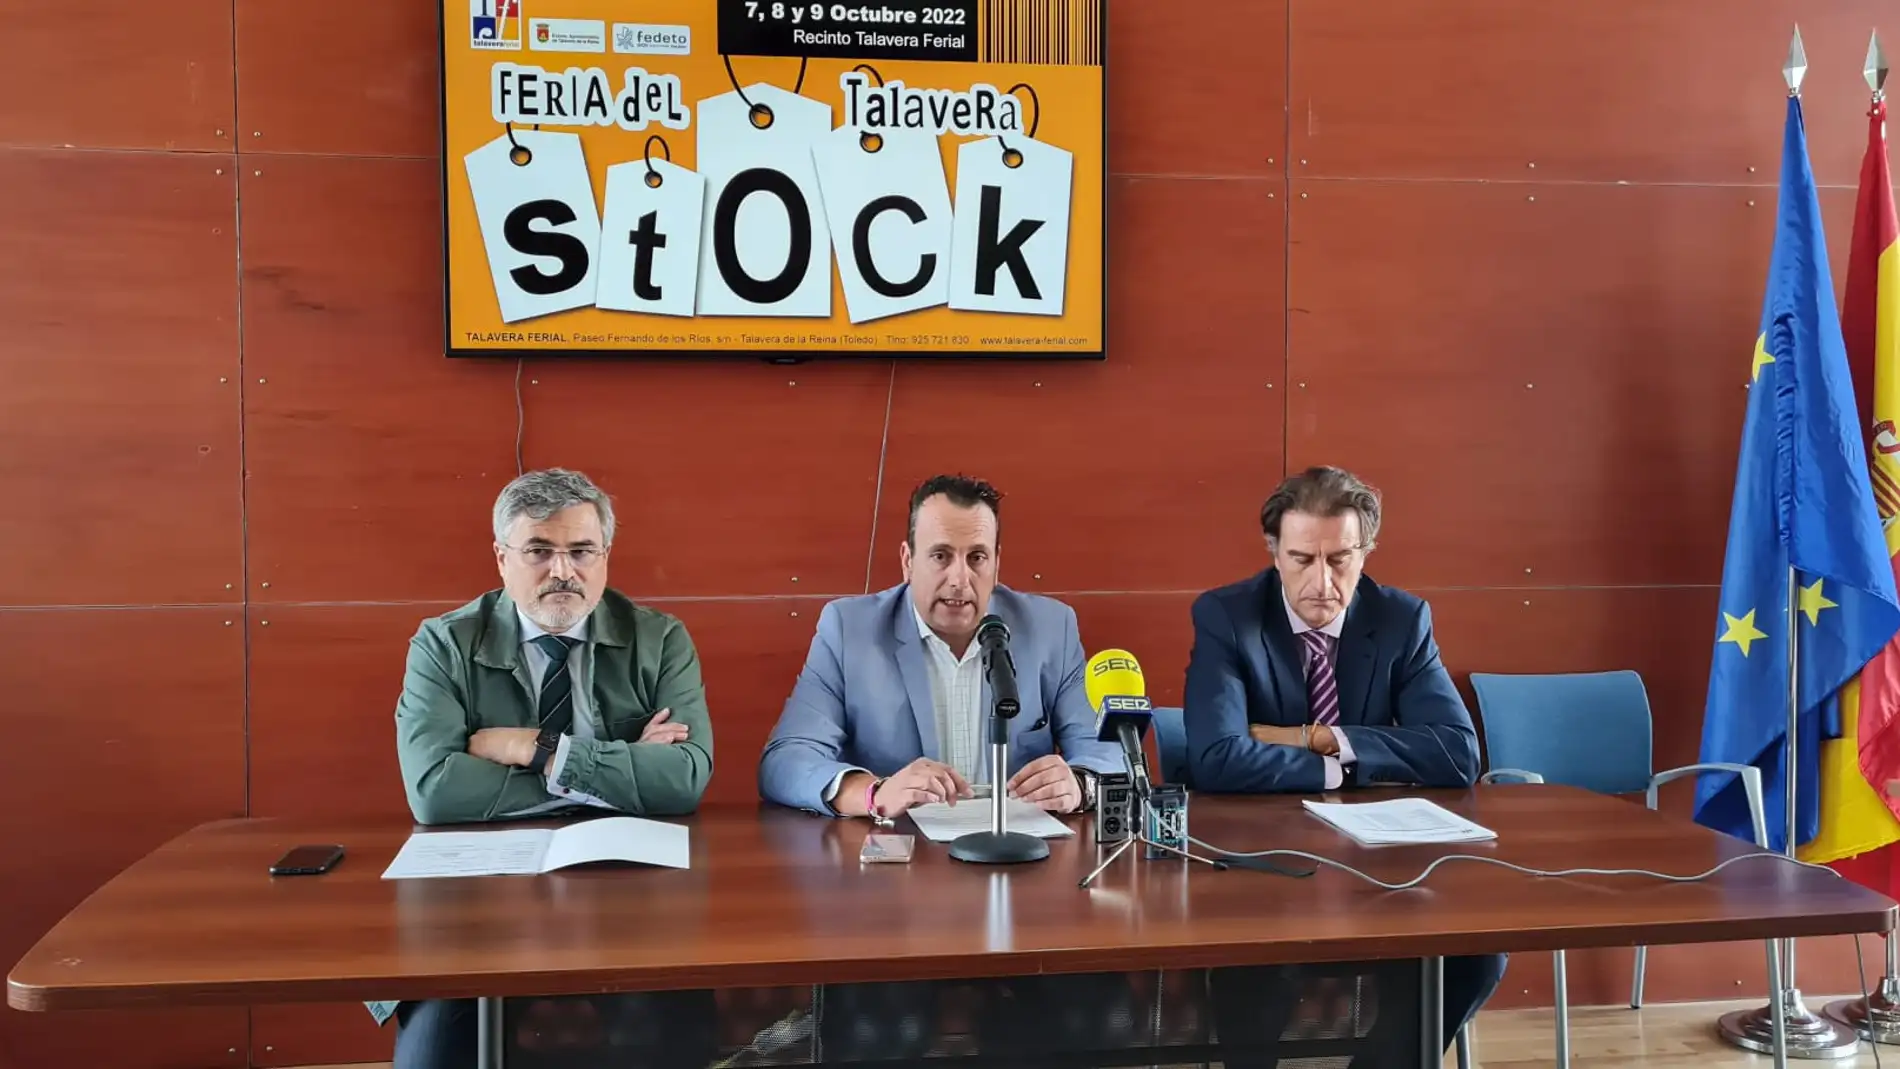 La Feria del Stock de Talavera tendrá una reducción en el precio de las entradas